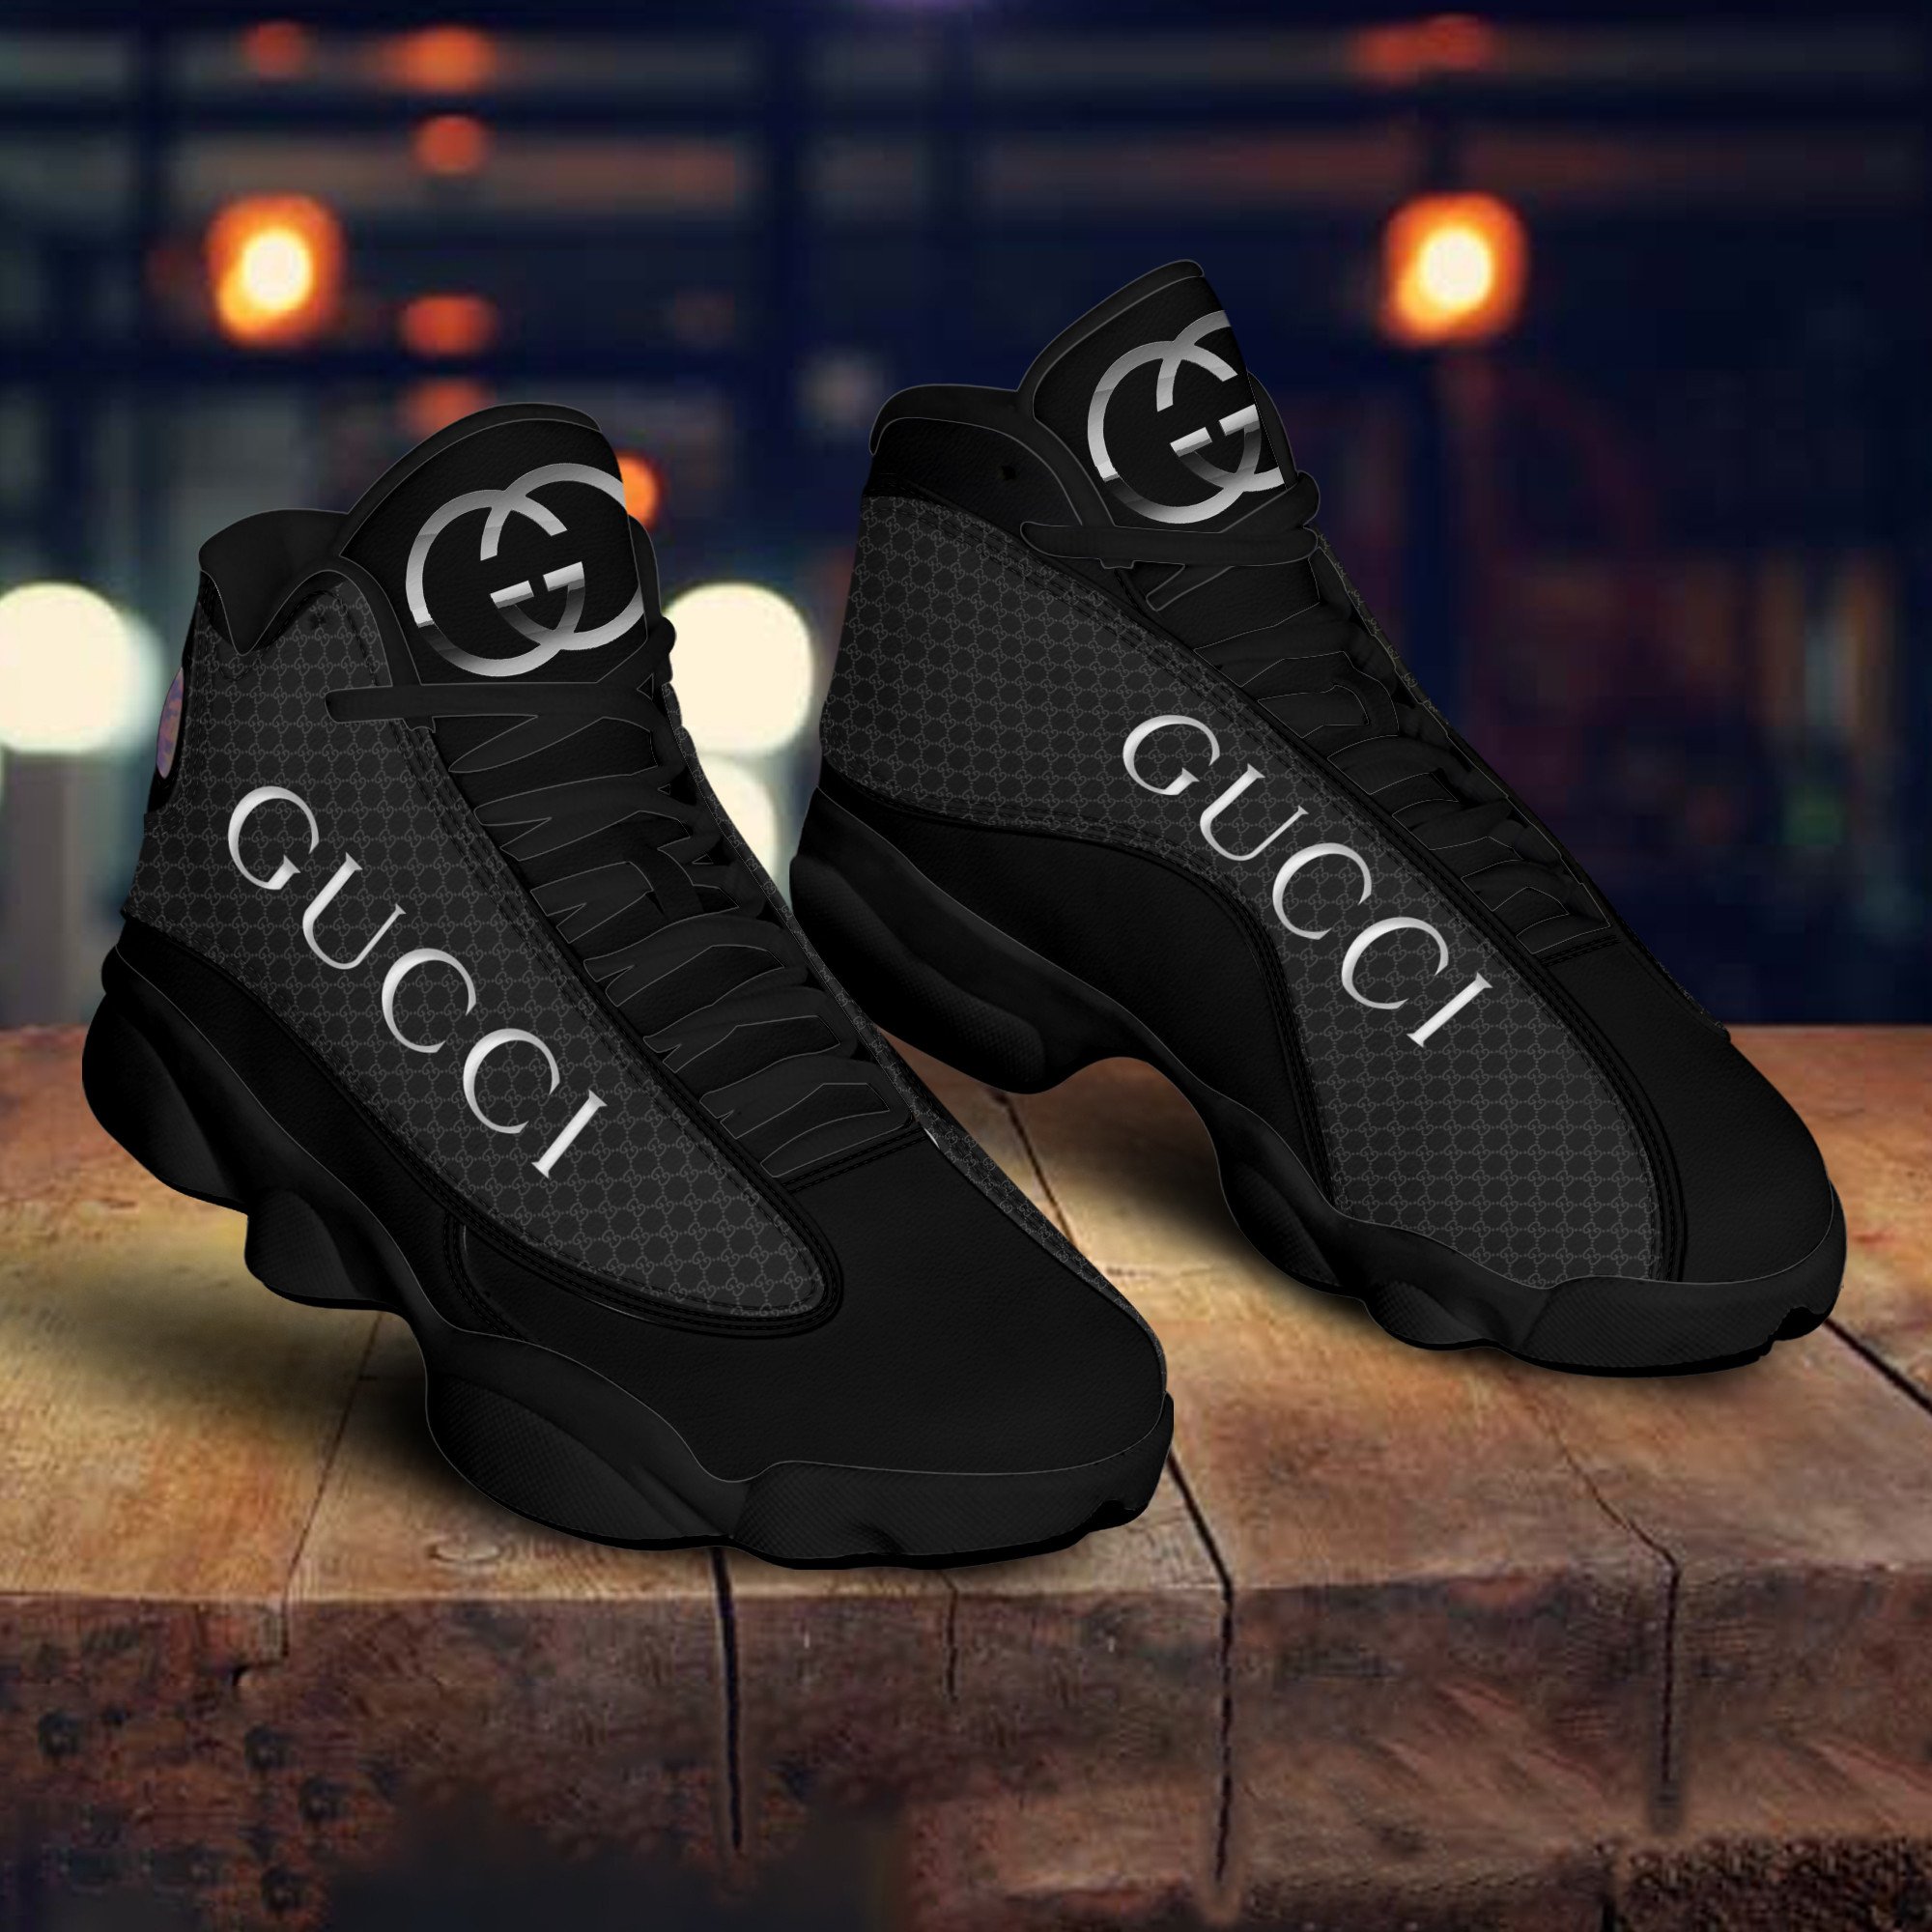 GC Black White Air Jordan 13 Sneakers Shoes ver 31